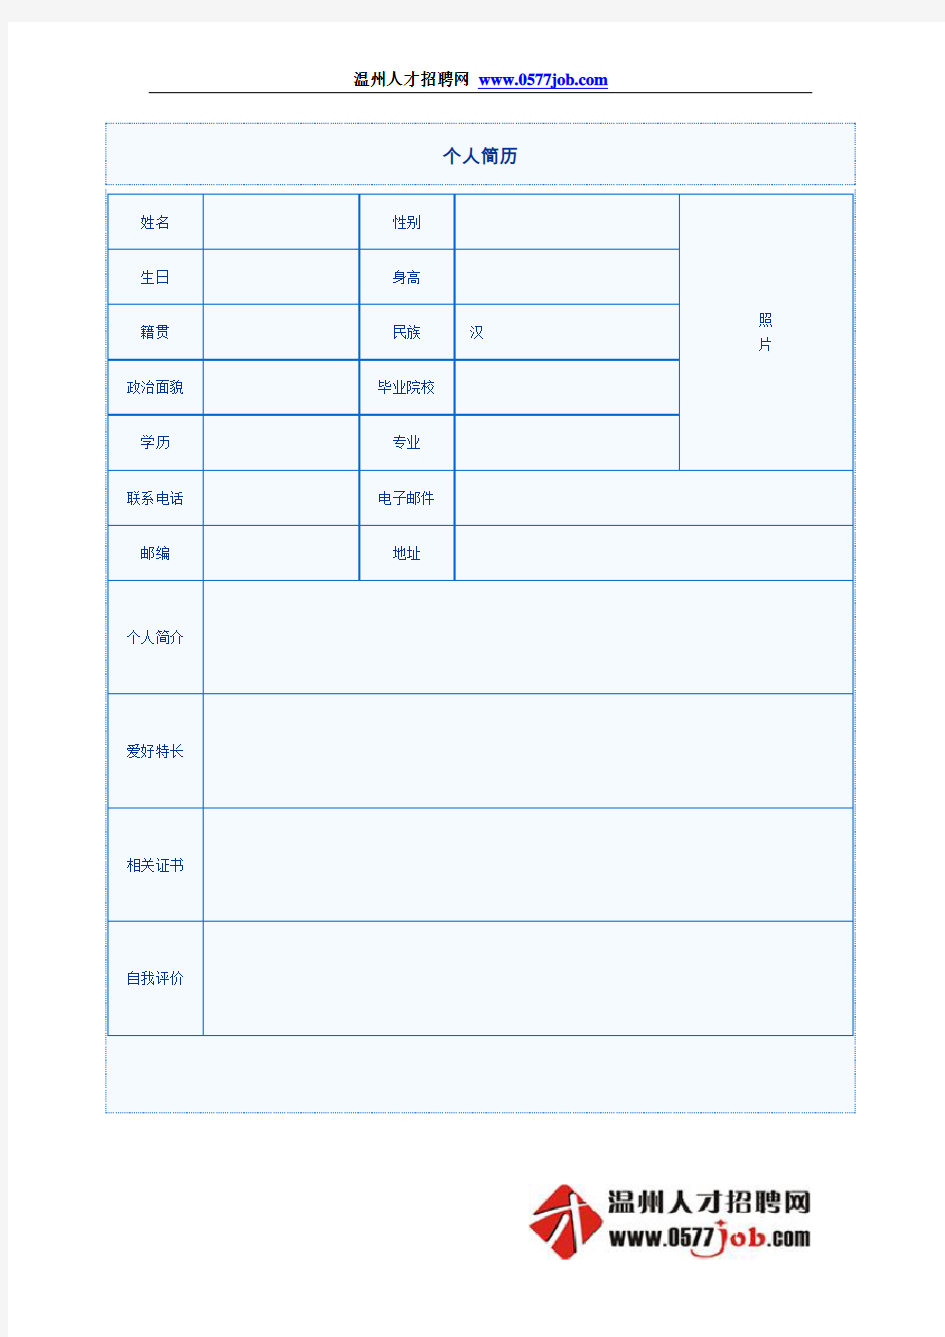 中英文简历模板表格